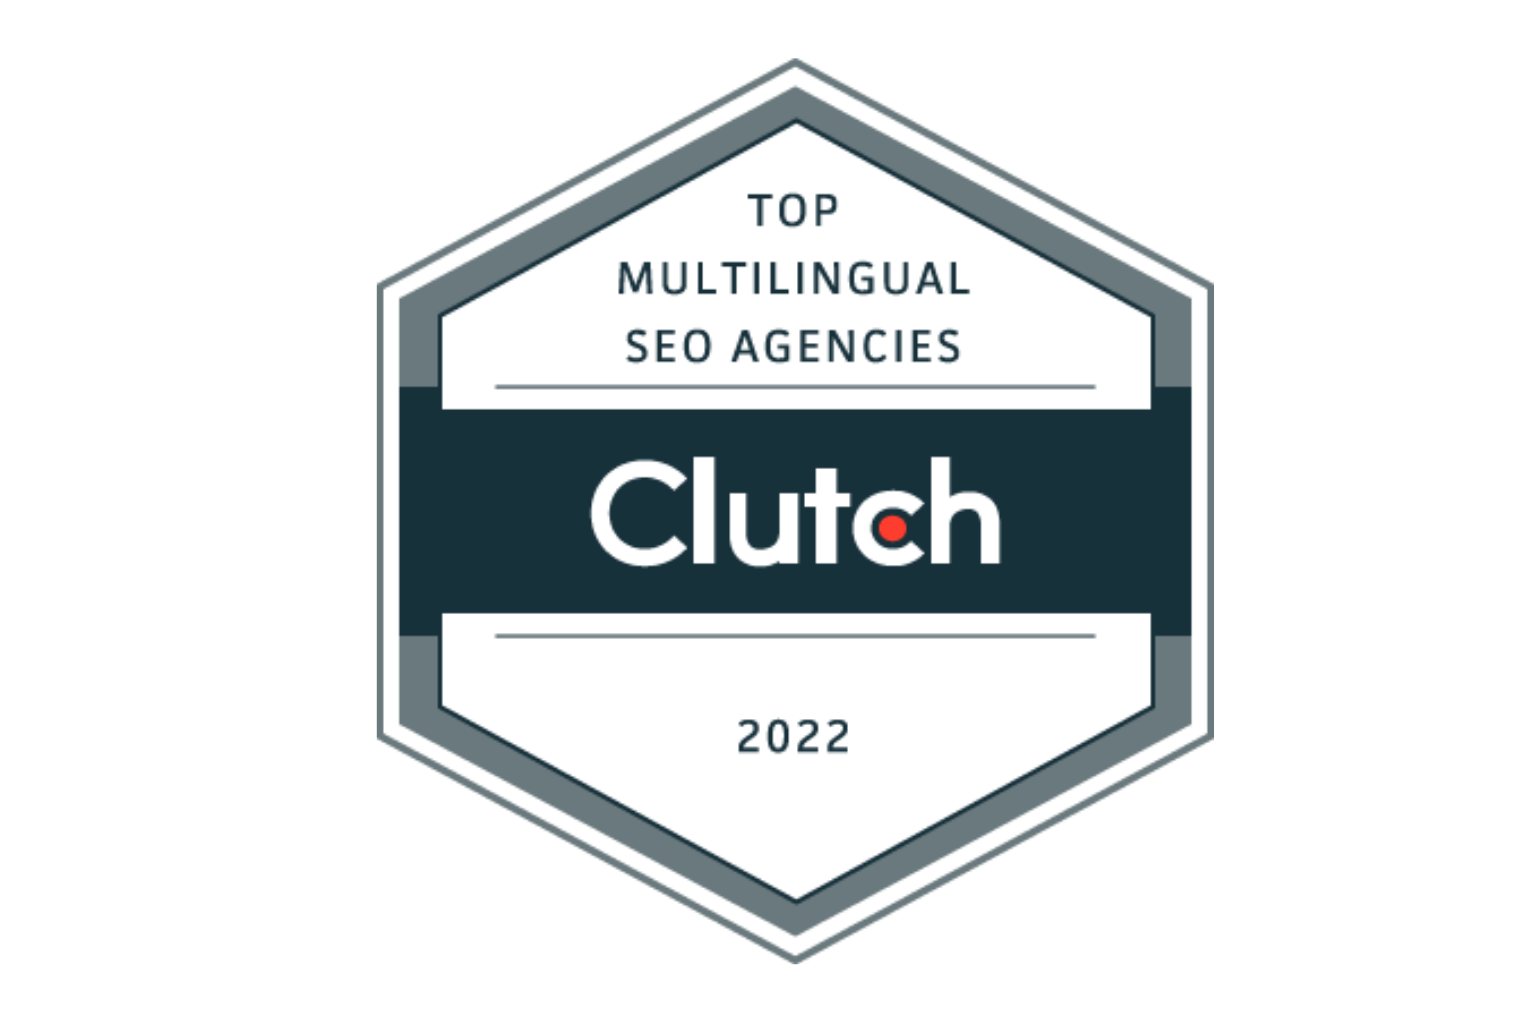 clutch award 2022 176x125